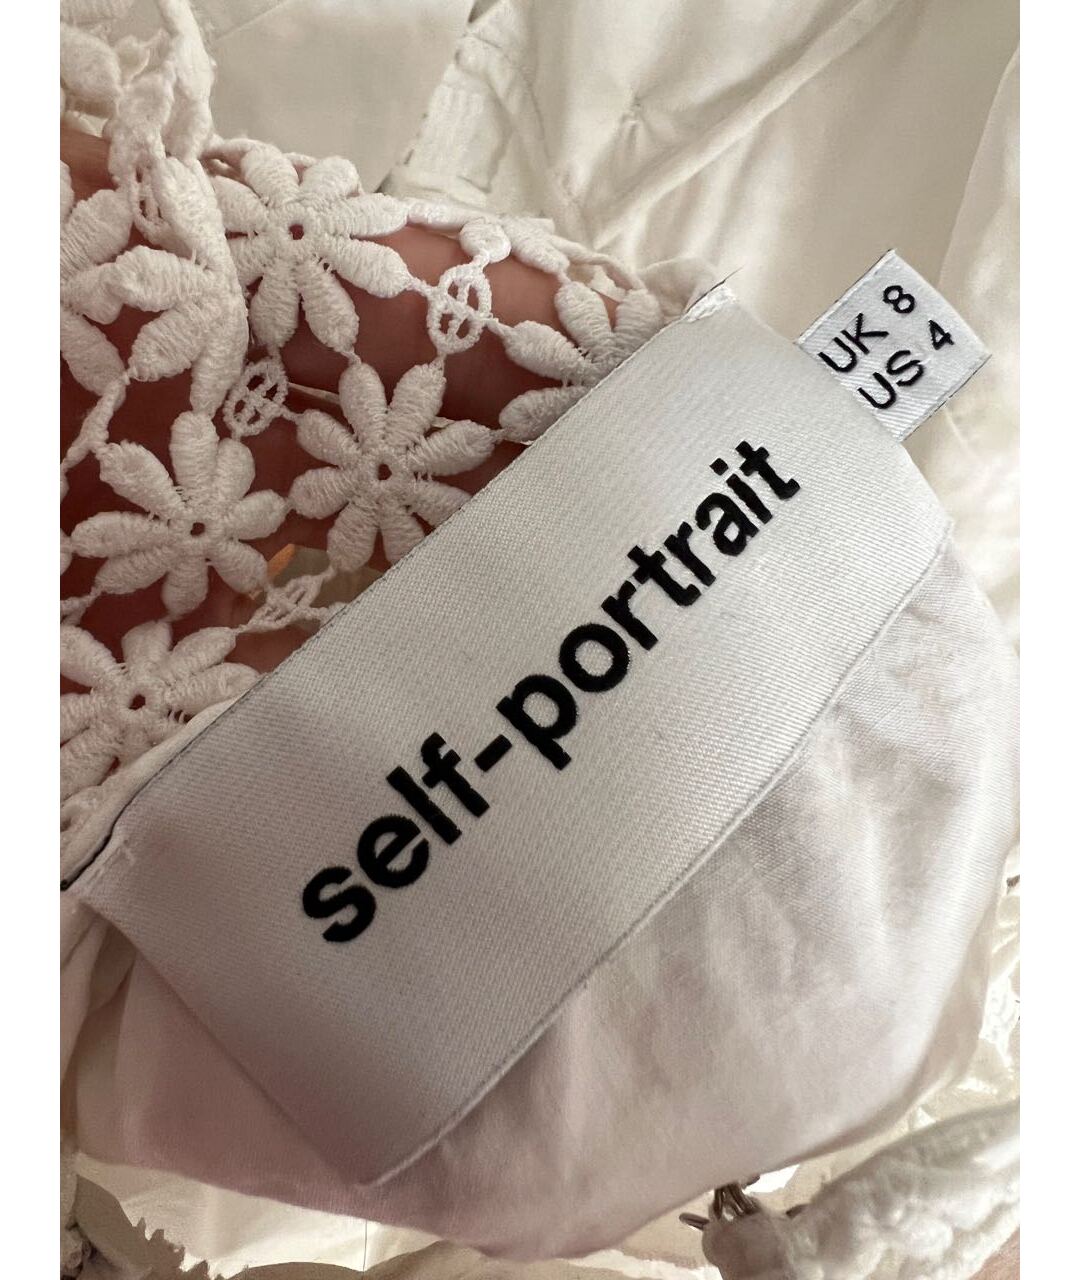 SELF-PORTRAIT Белое повседневное платье, фото 4